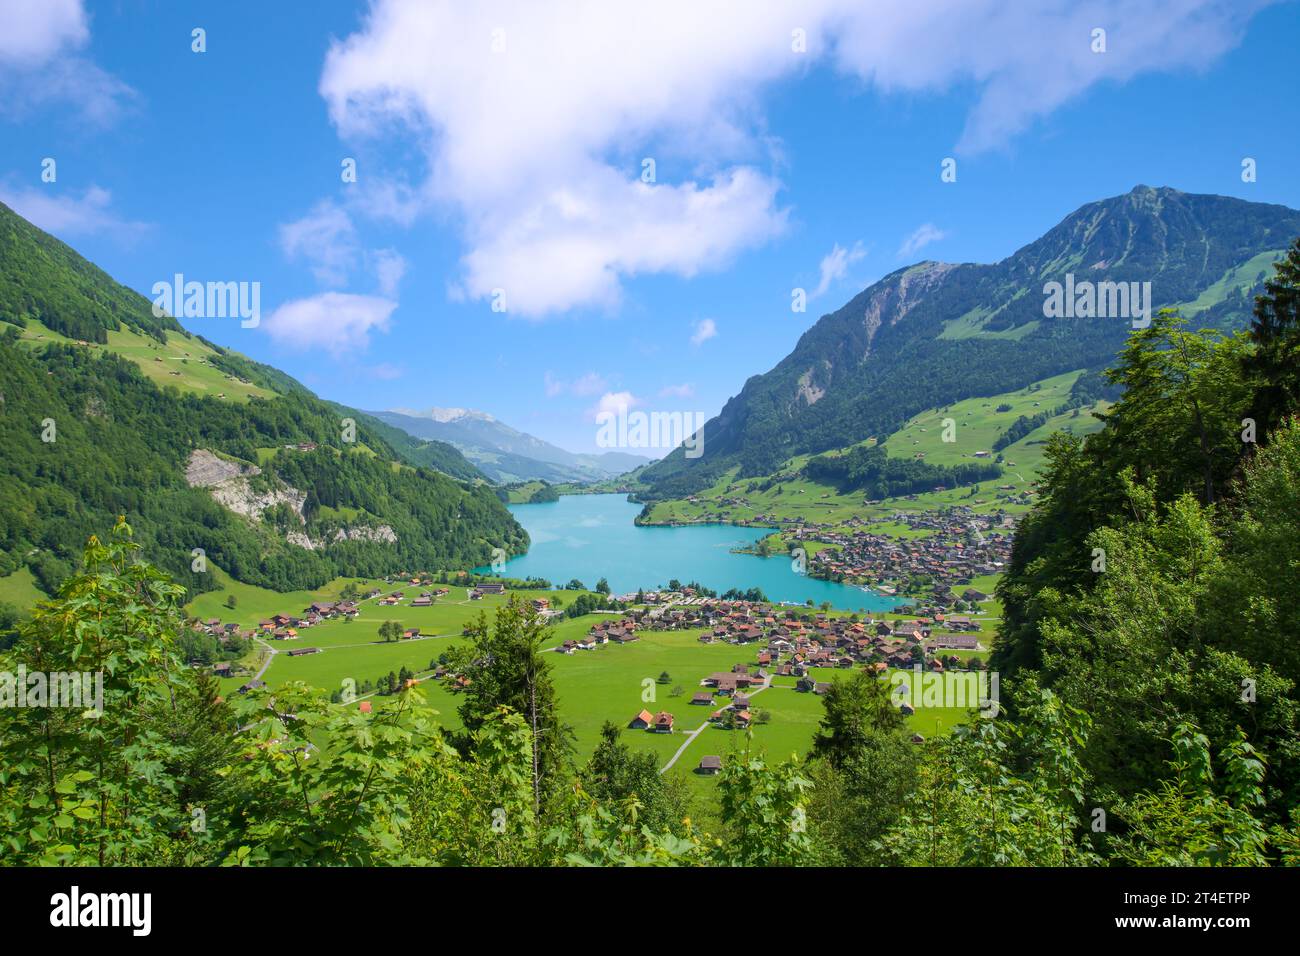 Lake Lungern Valley from Brunig Pass between Lucerne and Interlaken, Switzerland Stock Photo